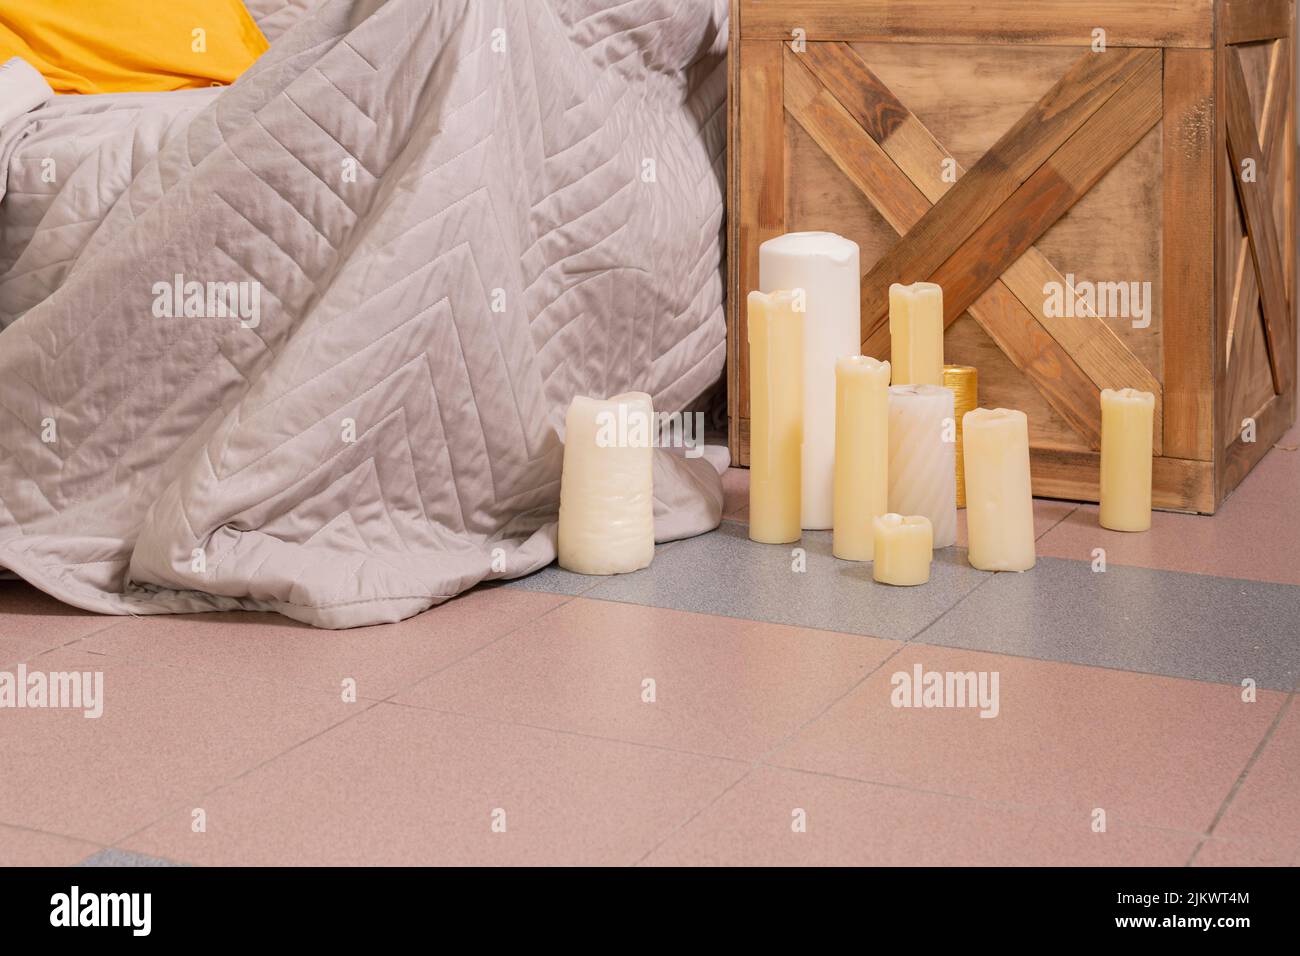 Un piccolo gruppo di candele di diverse forme, dimensioni e colori si trova sul pavimento della camera da letto vicino al letto e al comodino. Foto Stock